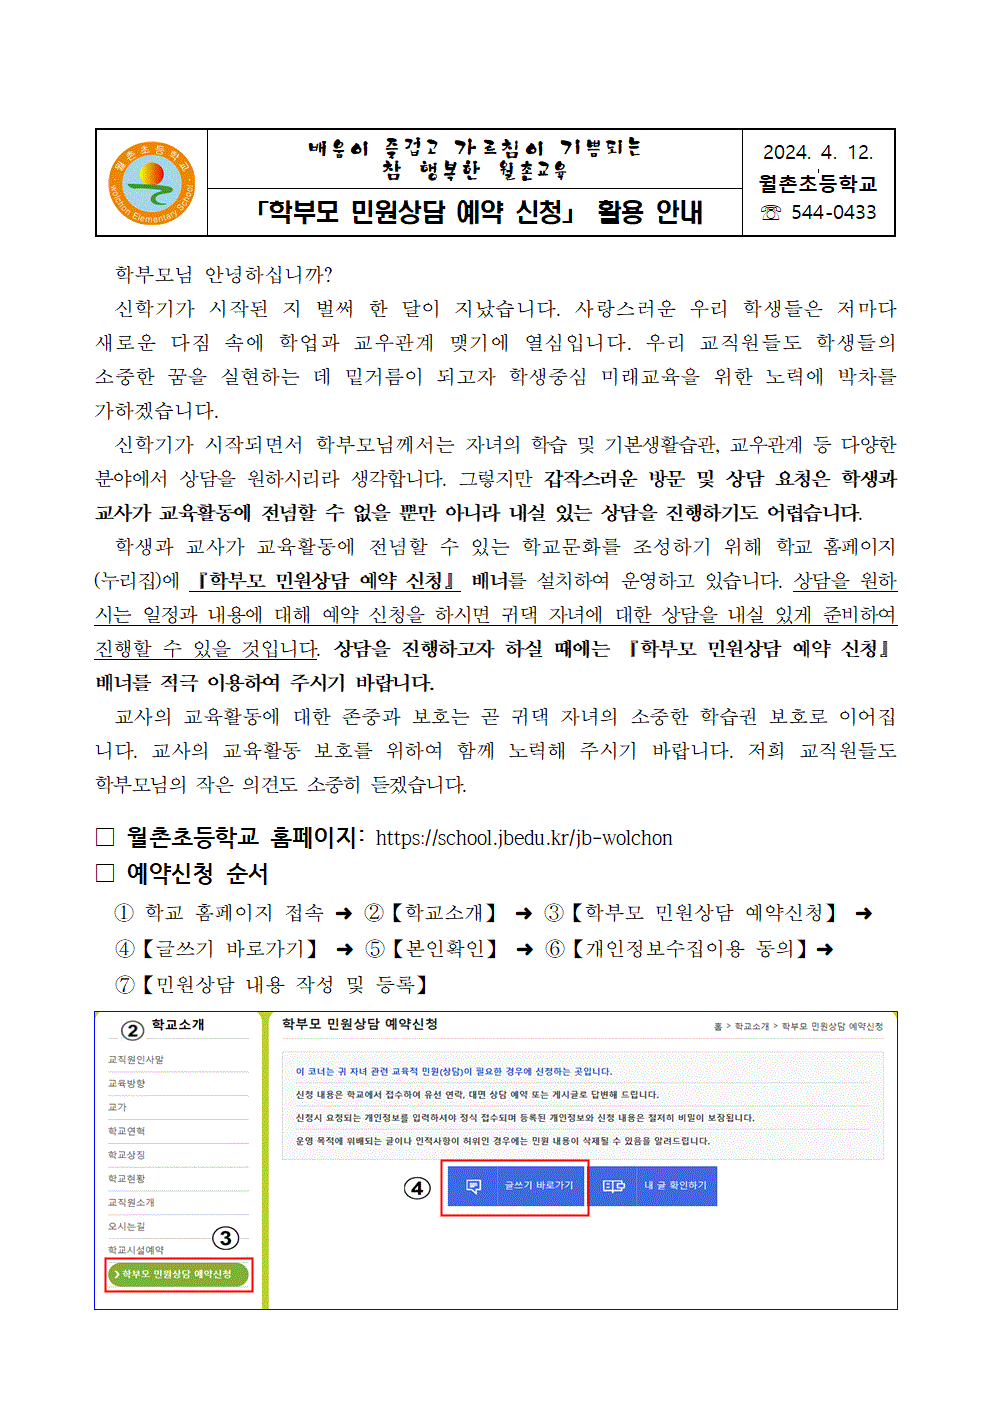 가정통신문- 학부모 민원상담 예약 신청 활용 안내001